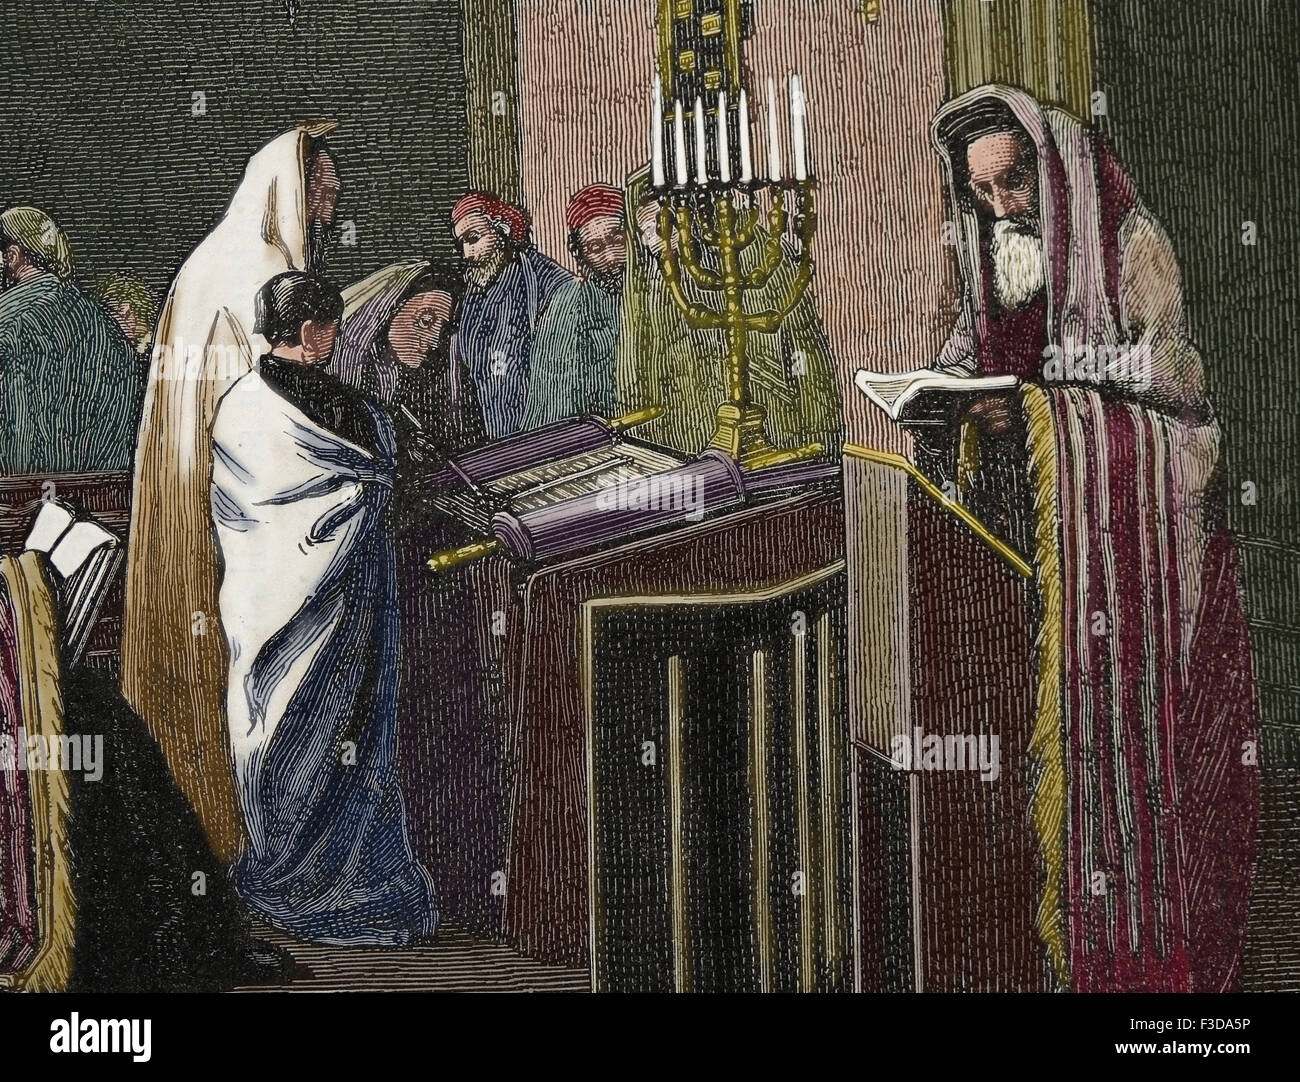 La Religion. Le judaïsme. Le rabbin est en train de lire dans la Torah à Synagogue. Gravure de froment, publié sur la Illustracion, 1870, l'Espagne. Banque D'Images